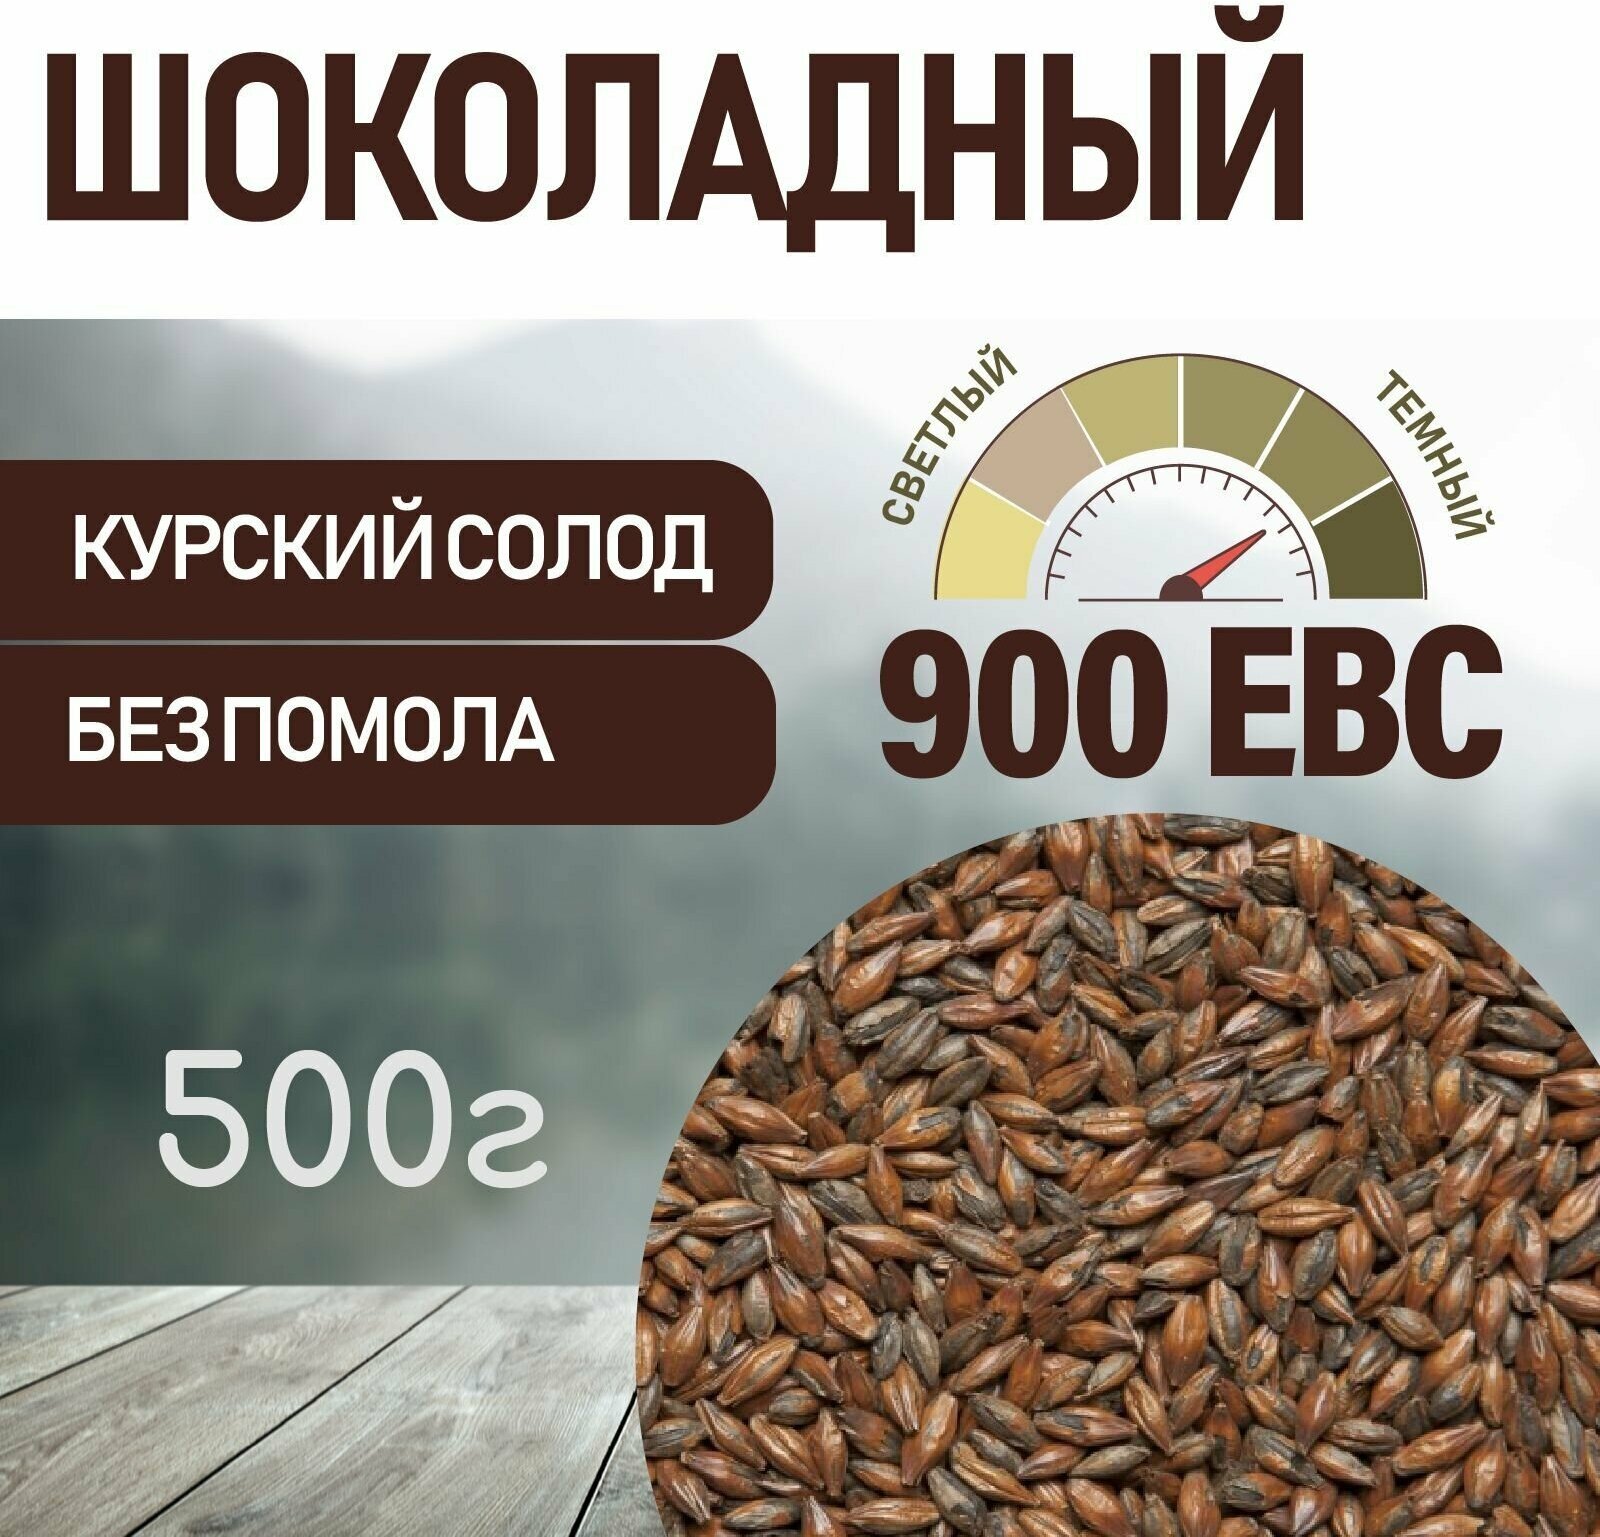 Солод ячменный шоколадный EBC 900 (Курский солод) 500 г